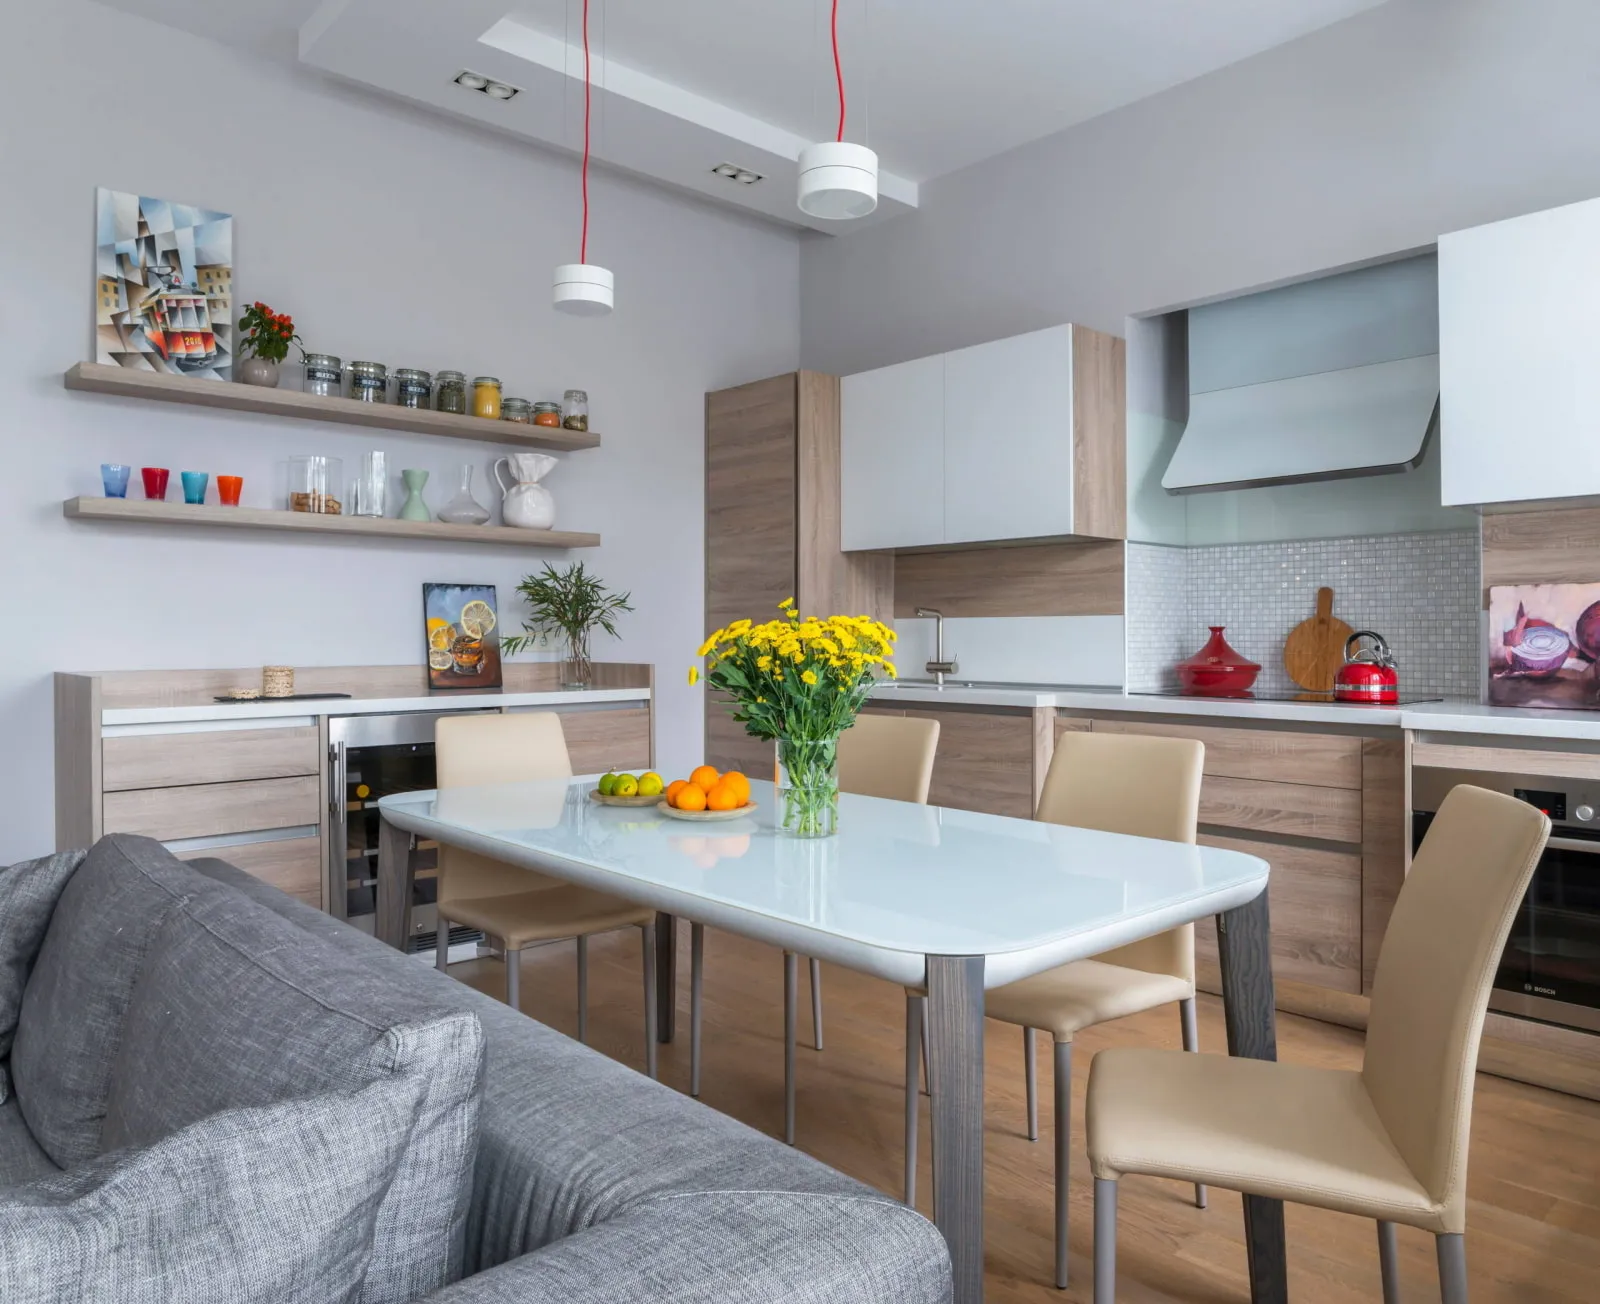 Кухня-гостиная 25 кв м – обзор лучших решений | Интерьер, Дизайн дома, Дизайн